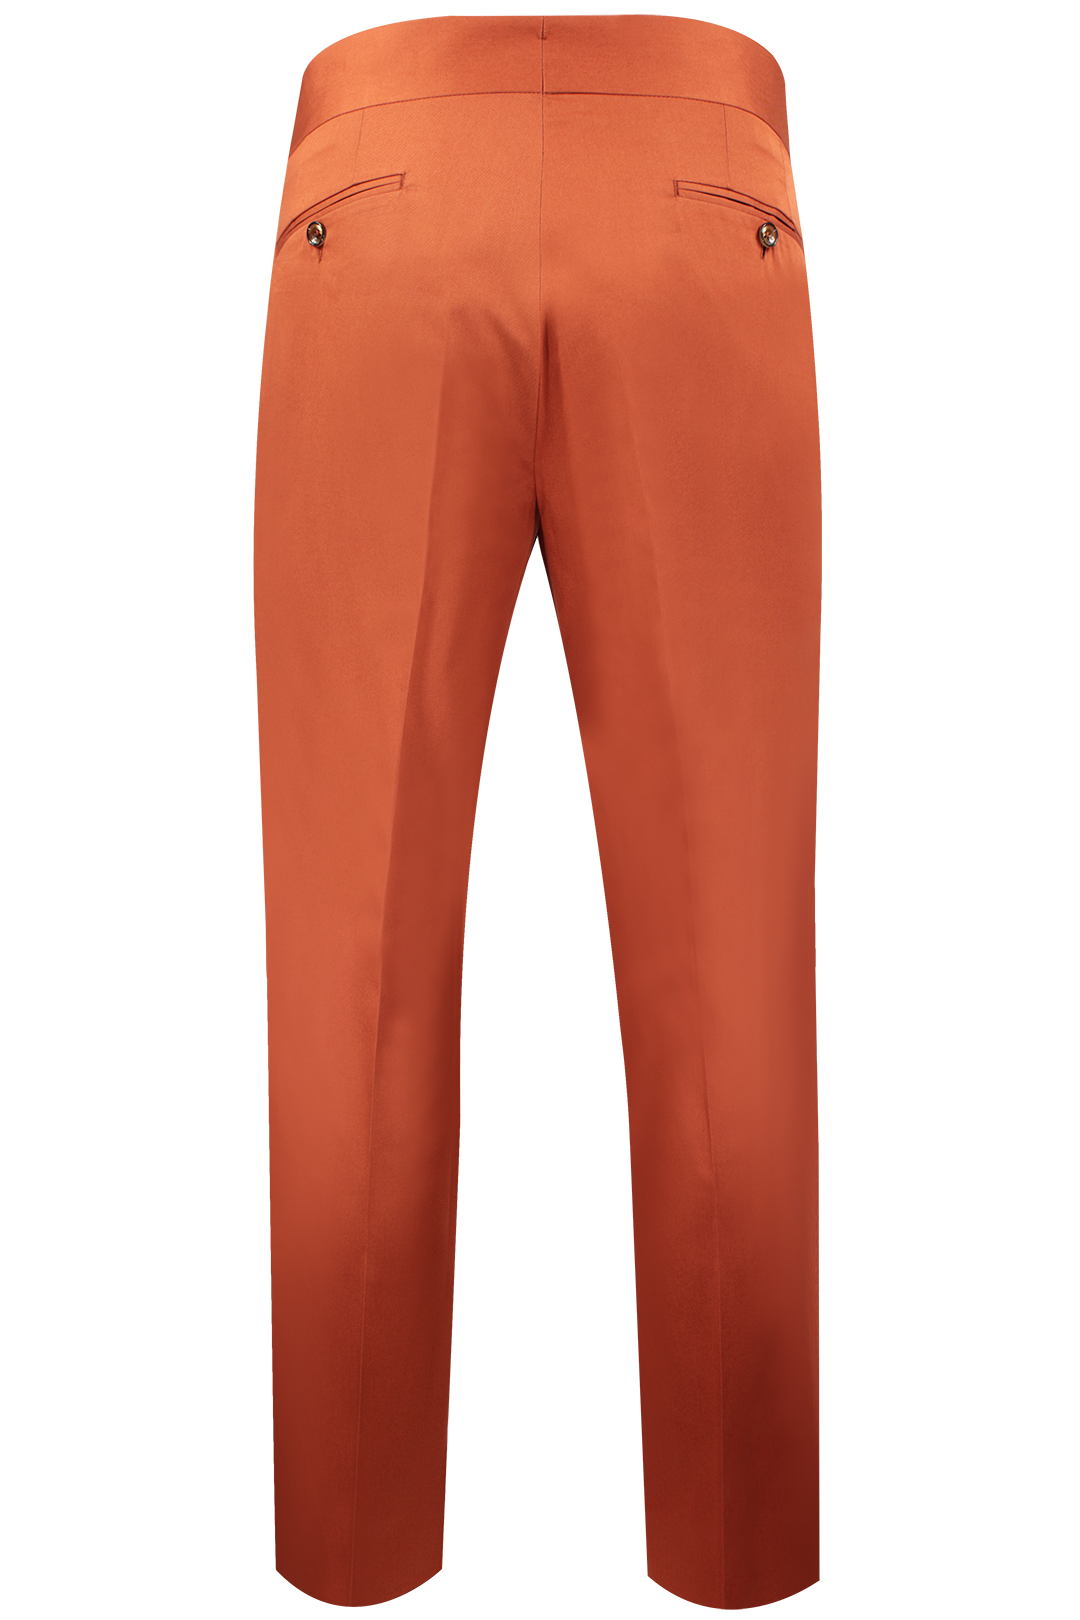 Pantalone con cinta sartoriale in cotone color coccio retro